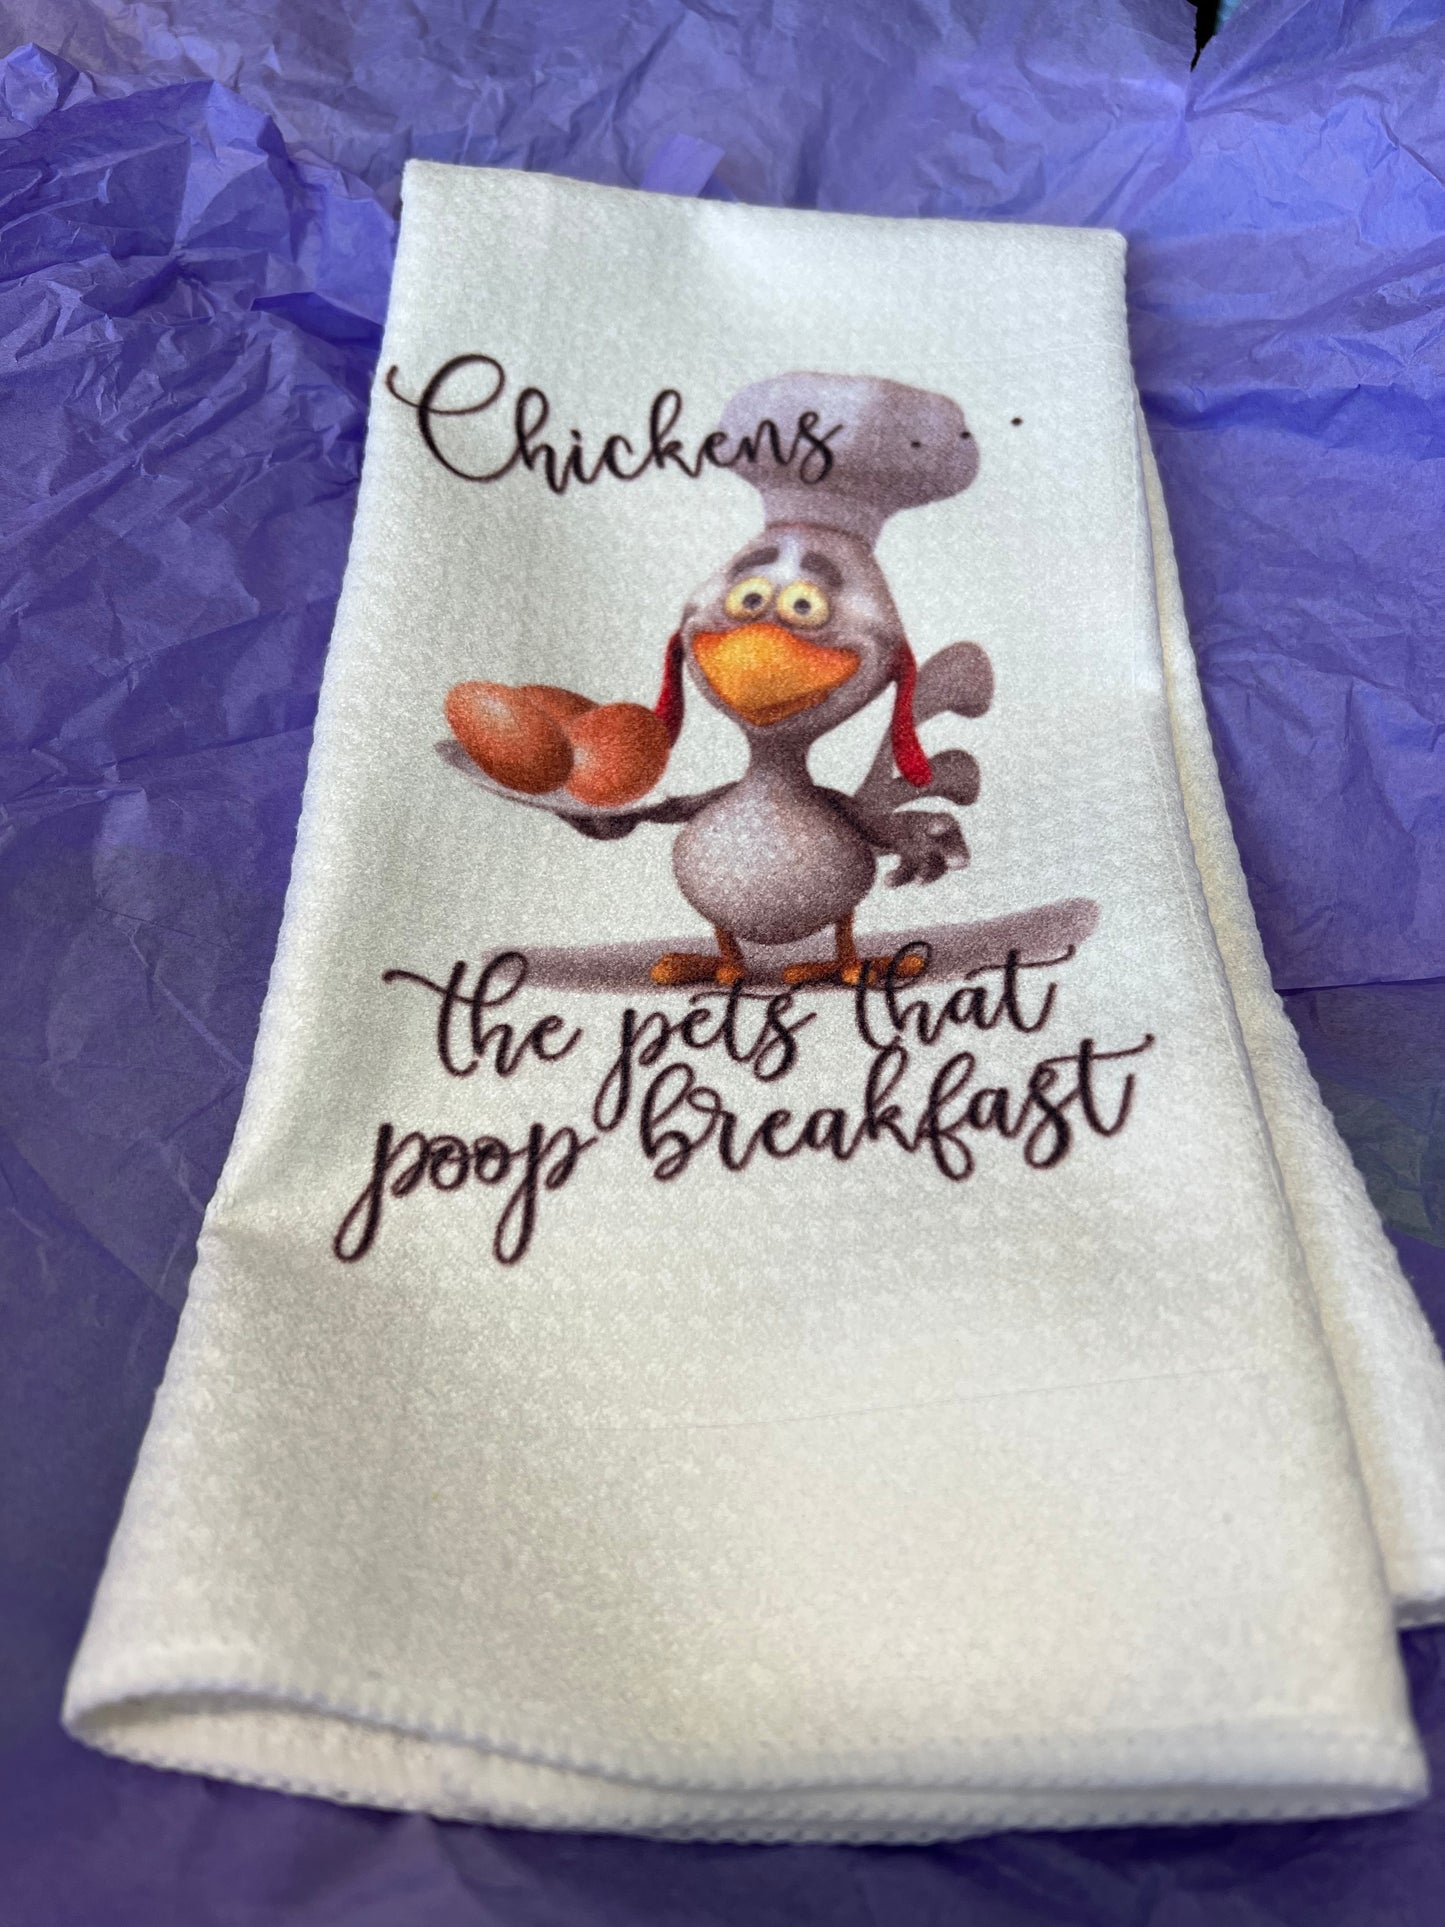 Did a chicken just poop breakfast? Towel